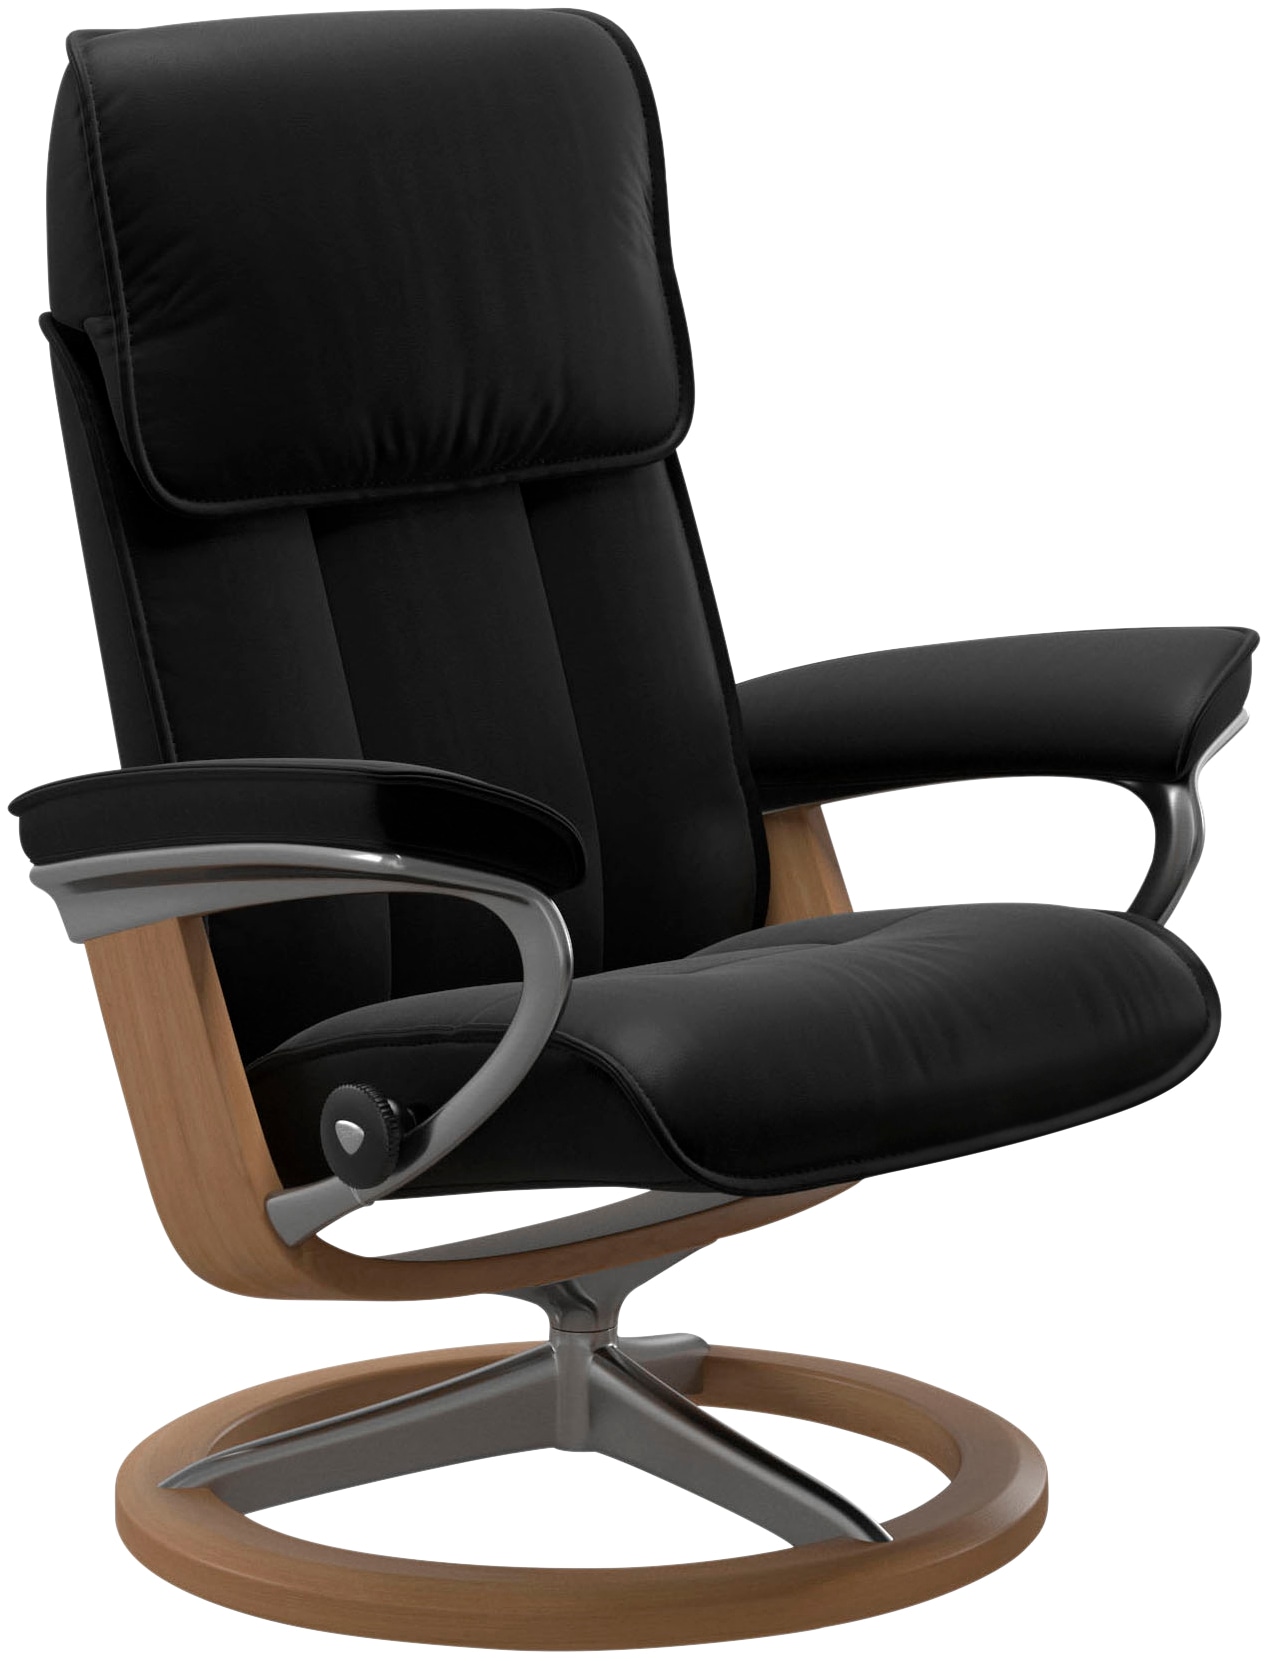 Stressless ® Atpalaiduojanti kėdė »Admiral« su Si...